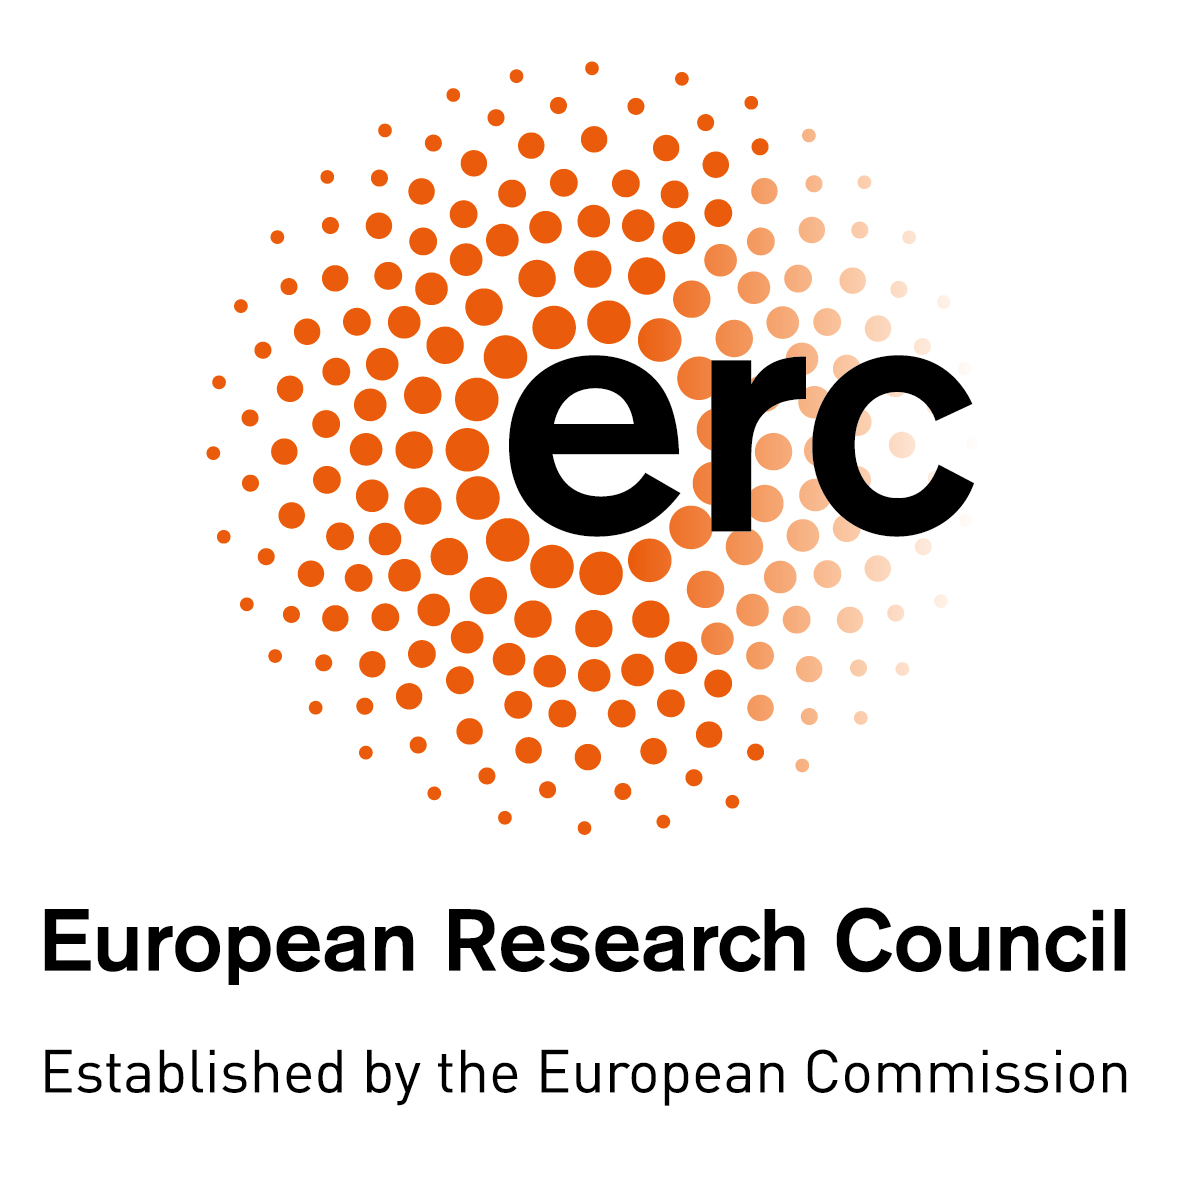 Ευρωπαϊκό Συμβούλιο Έρευνας (European Research Council): σχεδόν 2,2 δισεκατομμύρια ευρώ στο Πρόγραμμα Εργασίας του 2023